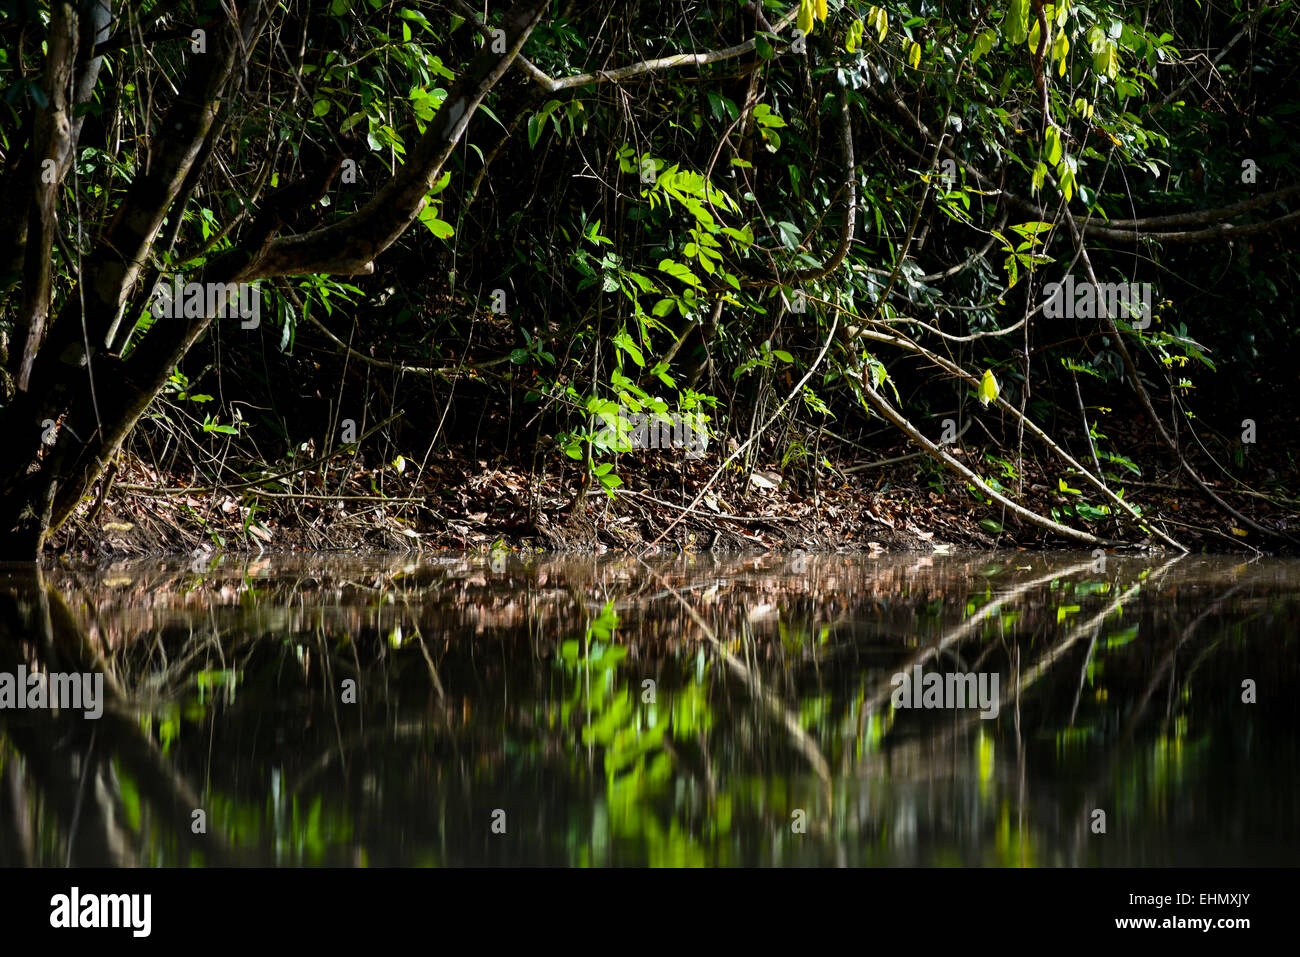 Marshland area of Way Kambas National Park, Sumatra, Indonesia. Stock Photo